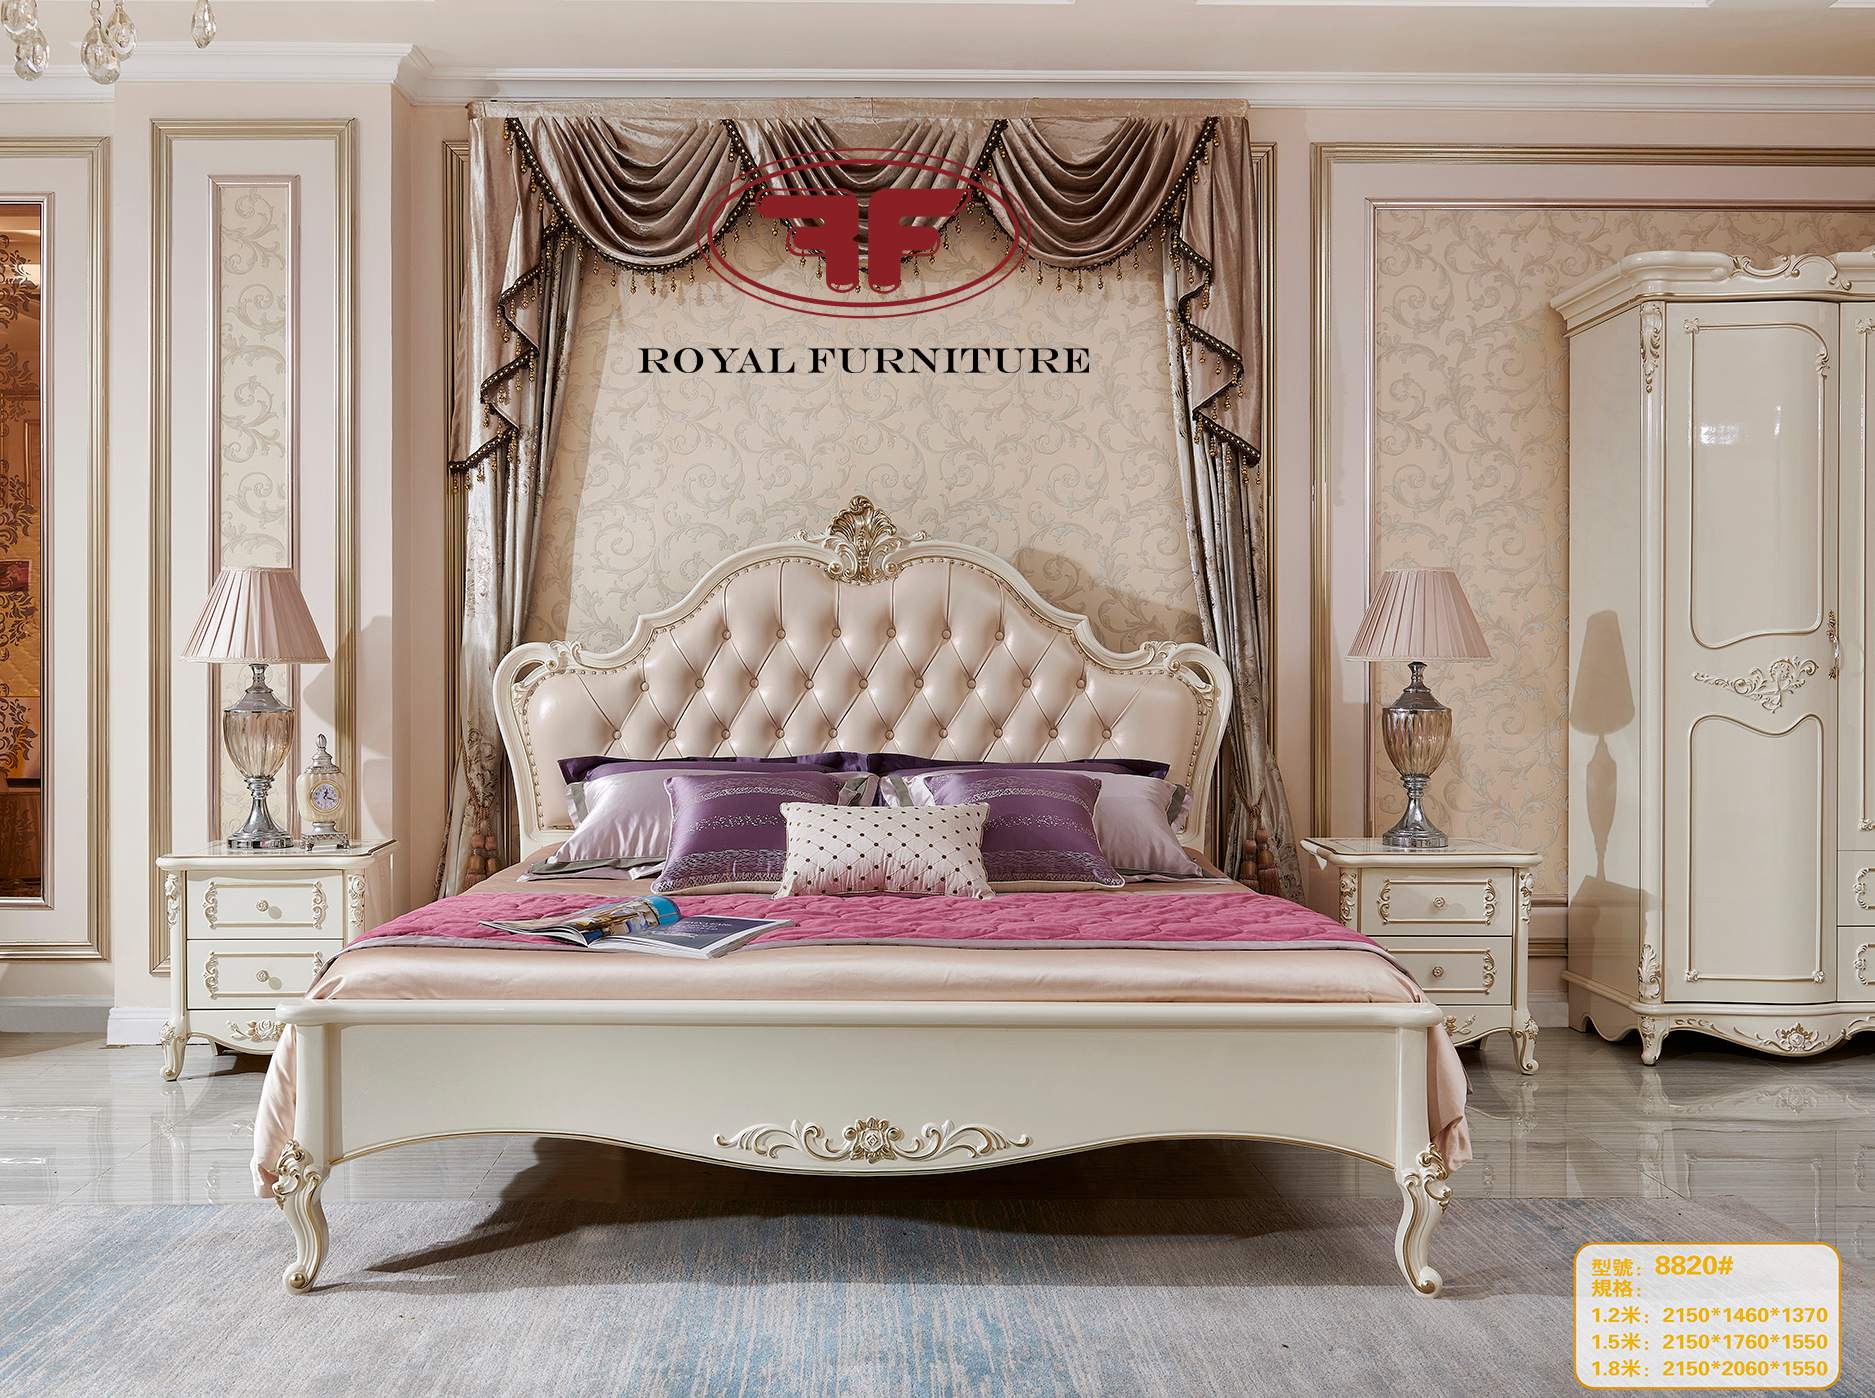 Với mẫu giường ngủ Tân cổ điển, bạn có thể đưa phòng ngủ của mình trở lại thế giới hoàng gia tráng lệ. Chất lượng và kiểu dáng đẹp mắt của nó sẽ khiến bạn trở nên hứng thú với việc trang trí nội thất và nghỉ ngơi thoải mái.